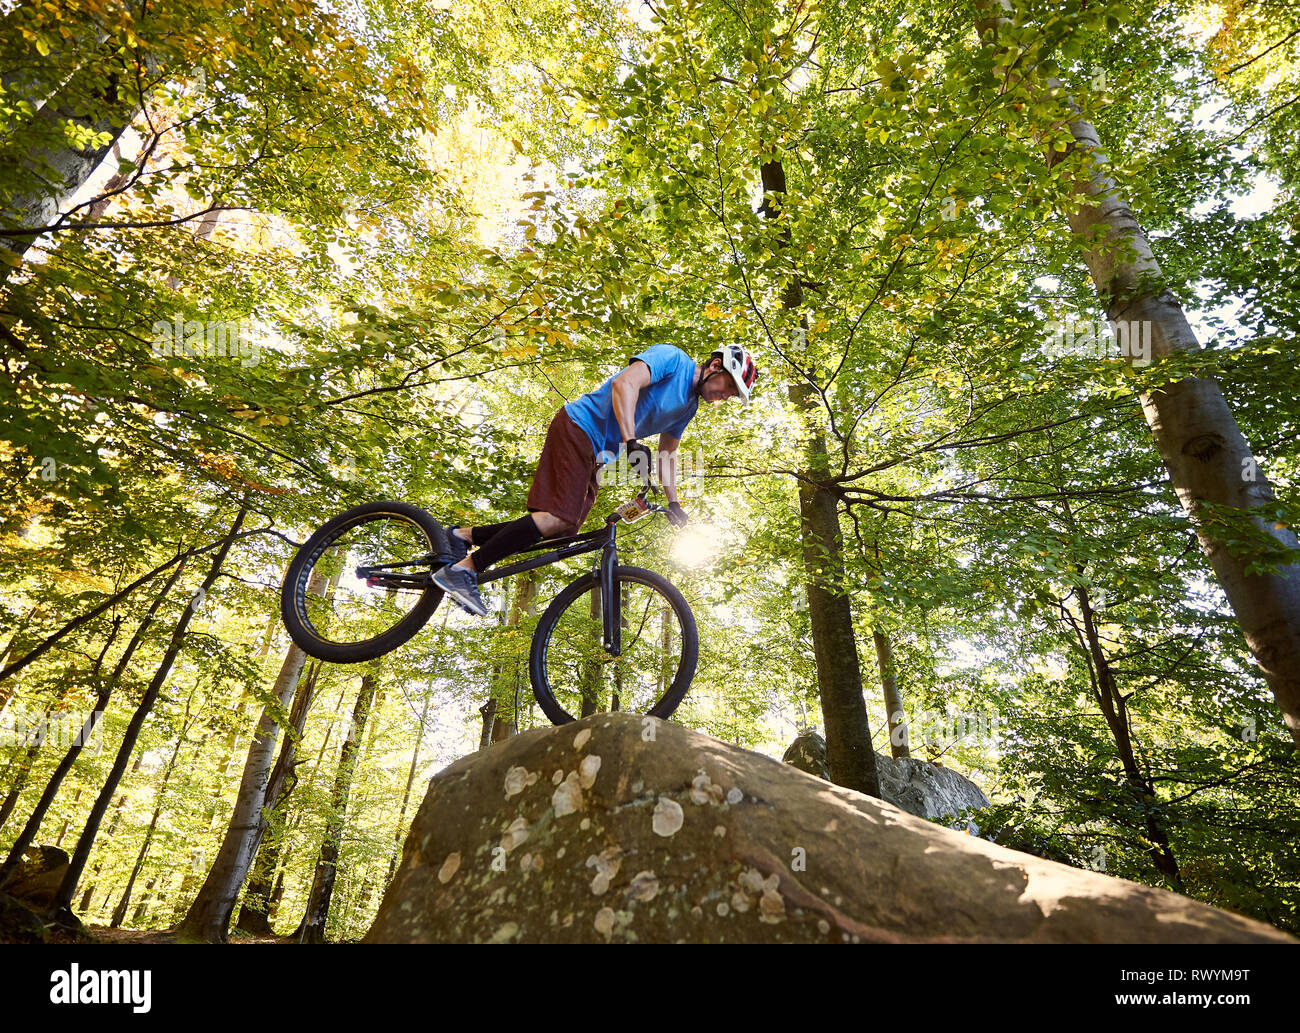 Junge Radfahrer stehen auf Vorderrad auf Trial Bike. Sportler Reiter balancing am Rande des Big Boulder im Wald an einem sonnigen Tag. Konzept der Extreme Sport aktiven Lebensstil Stockfoto